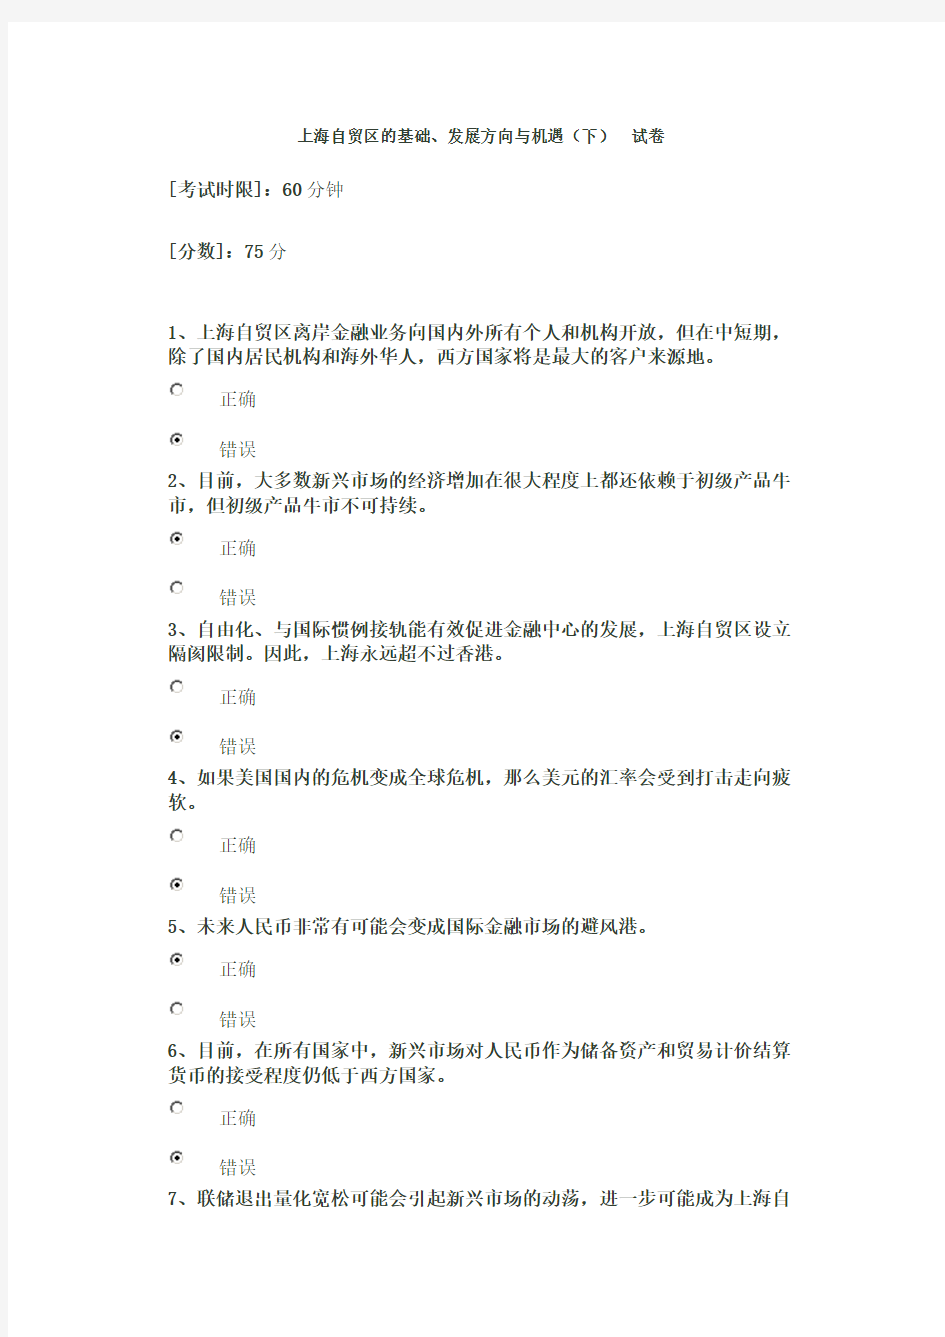 上海自贸区基础发展方向与机遇(下)答案